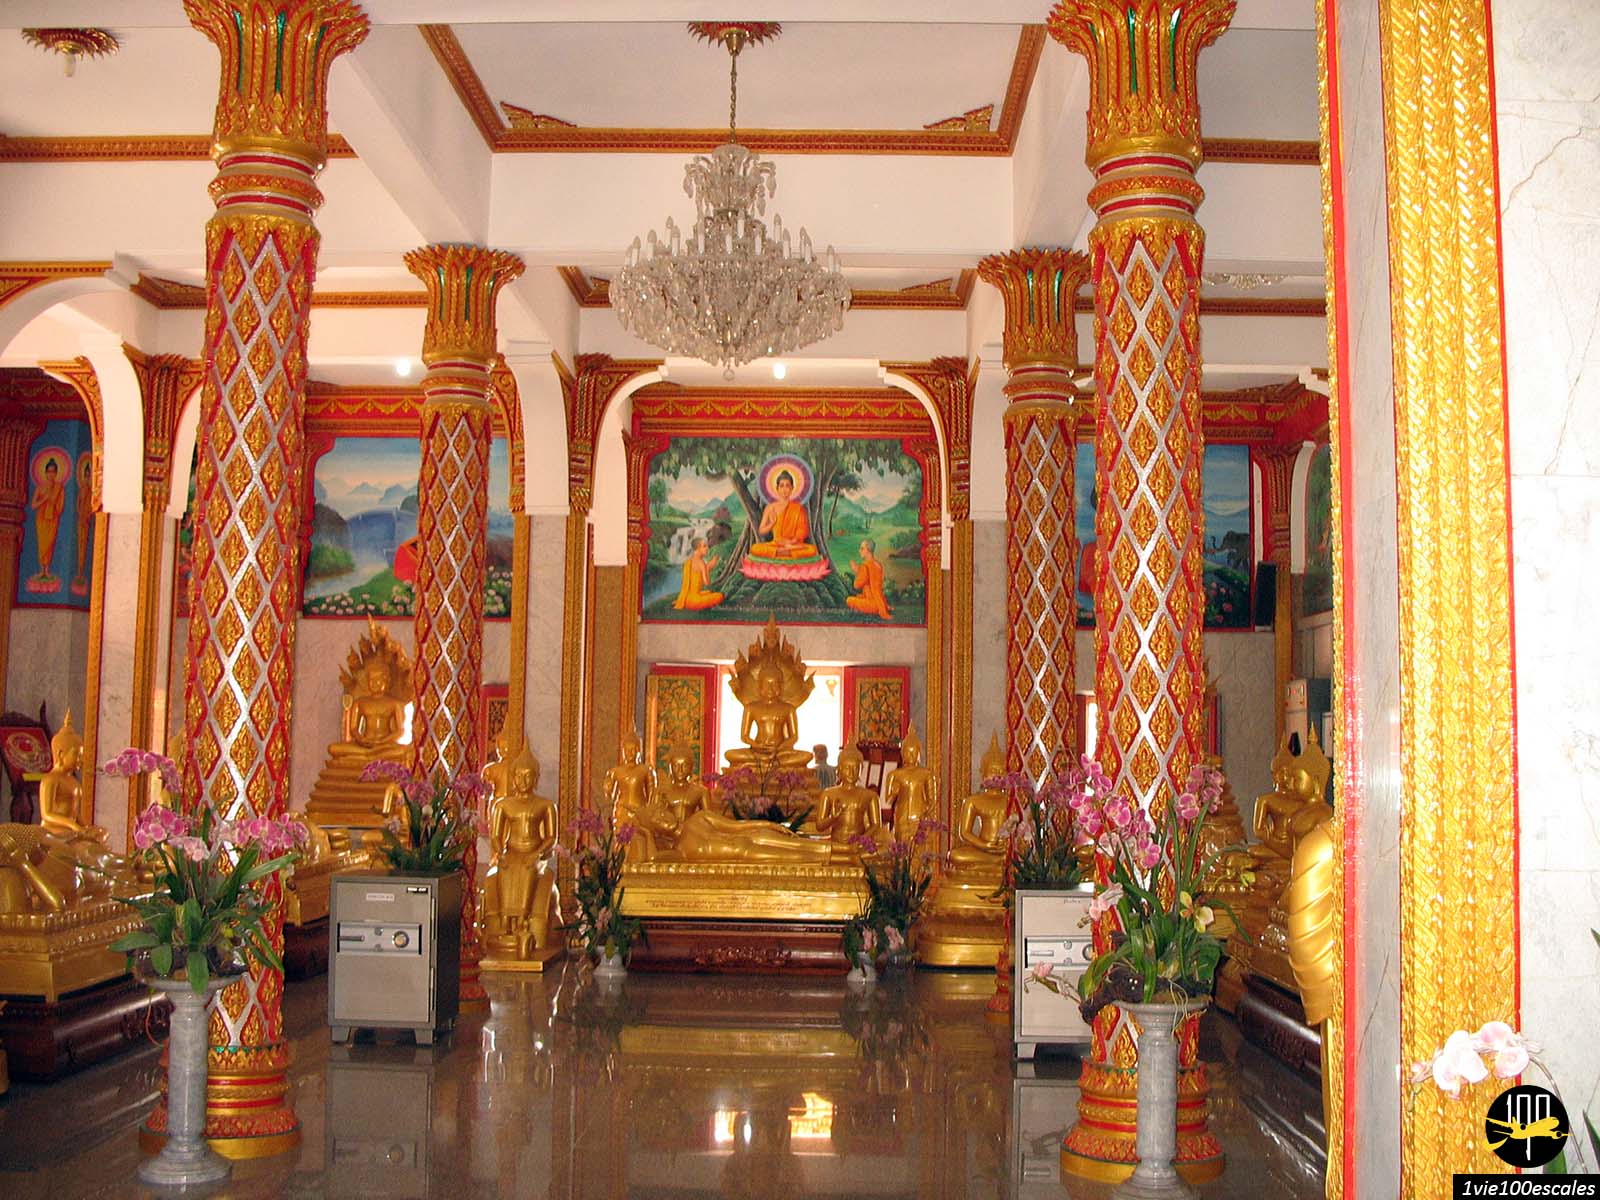 L'intérieur du temple Wat Chalong comprend plusieurs bâtiments abritant un fragment d’os de Bouddha et décorés de superbes fresques illustrant la vie de Bouddha